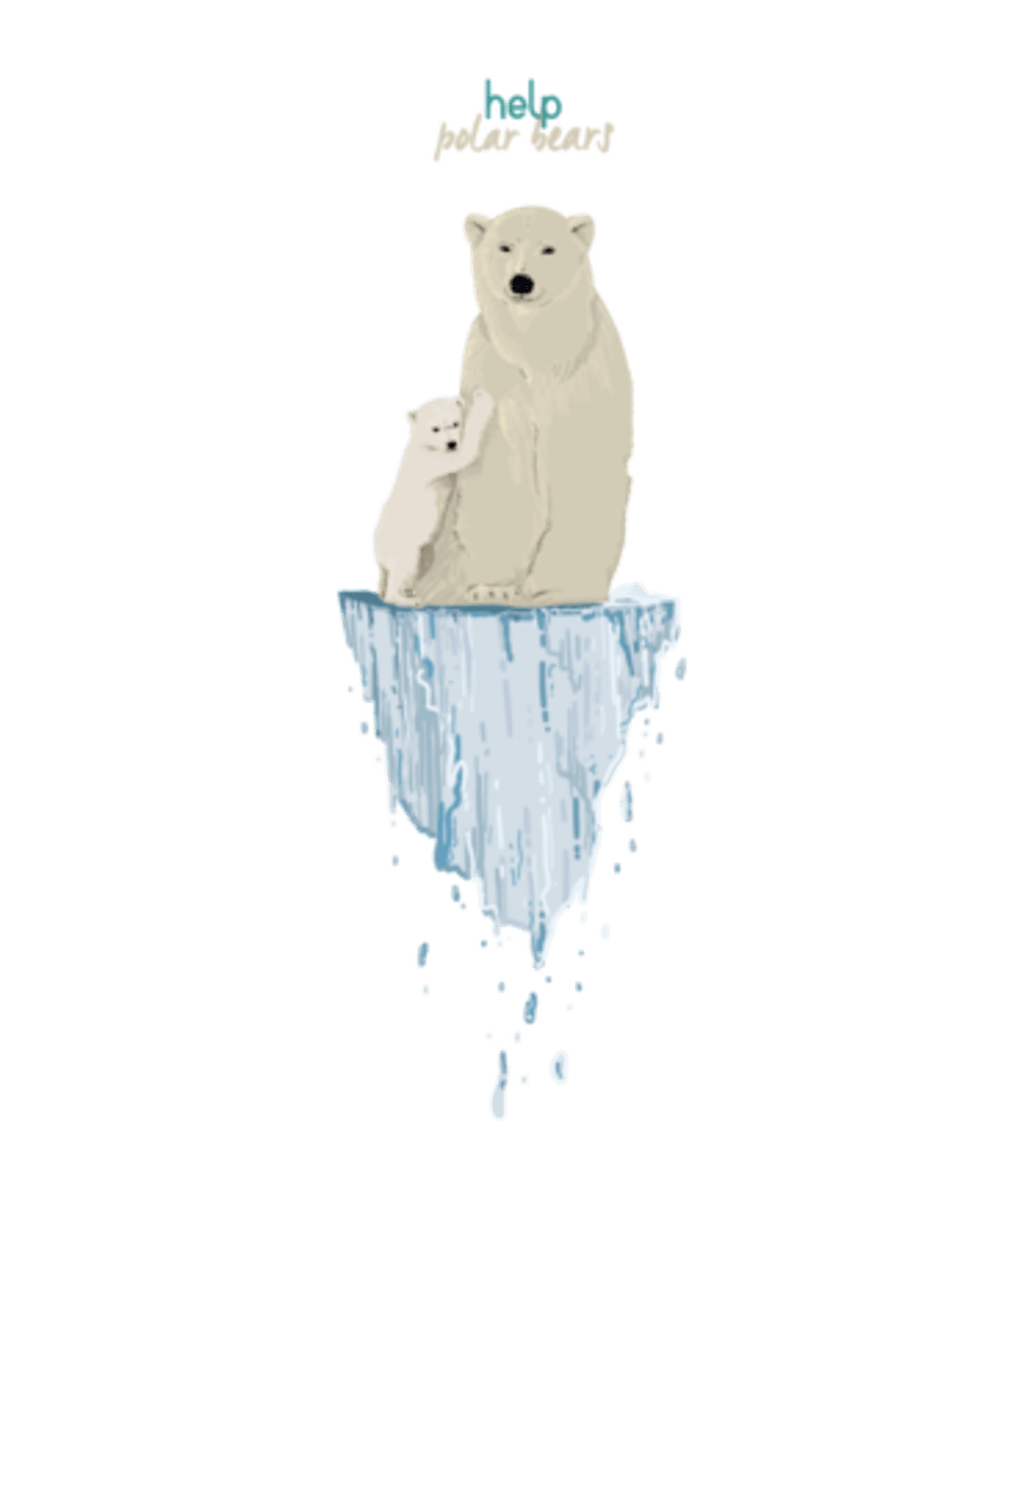 Help Polar Bears